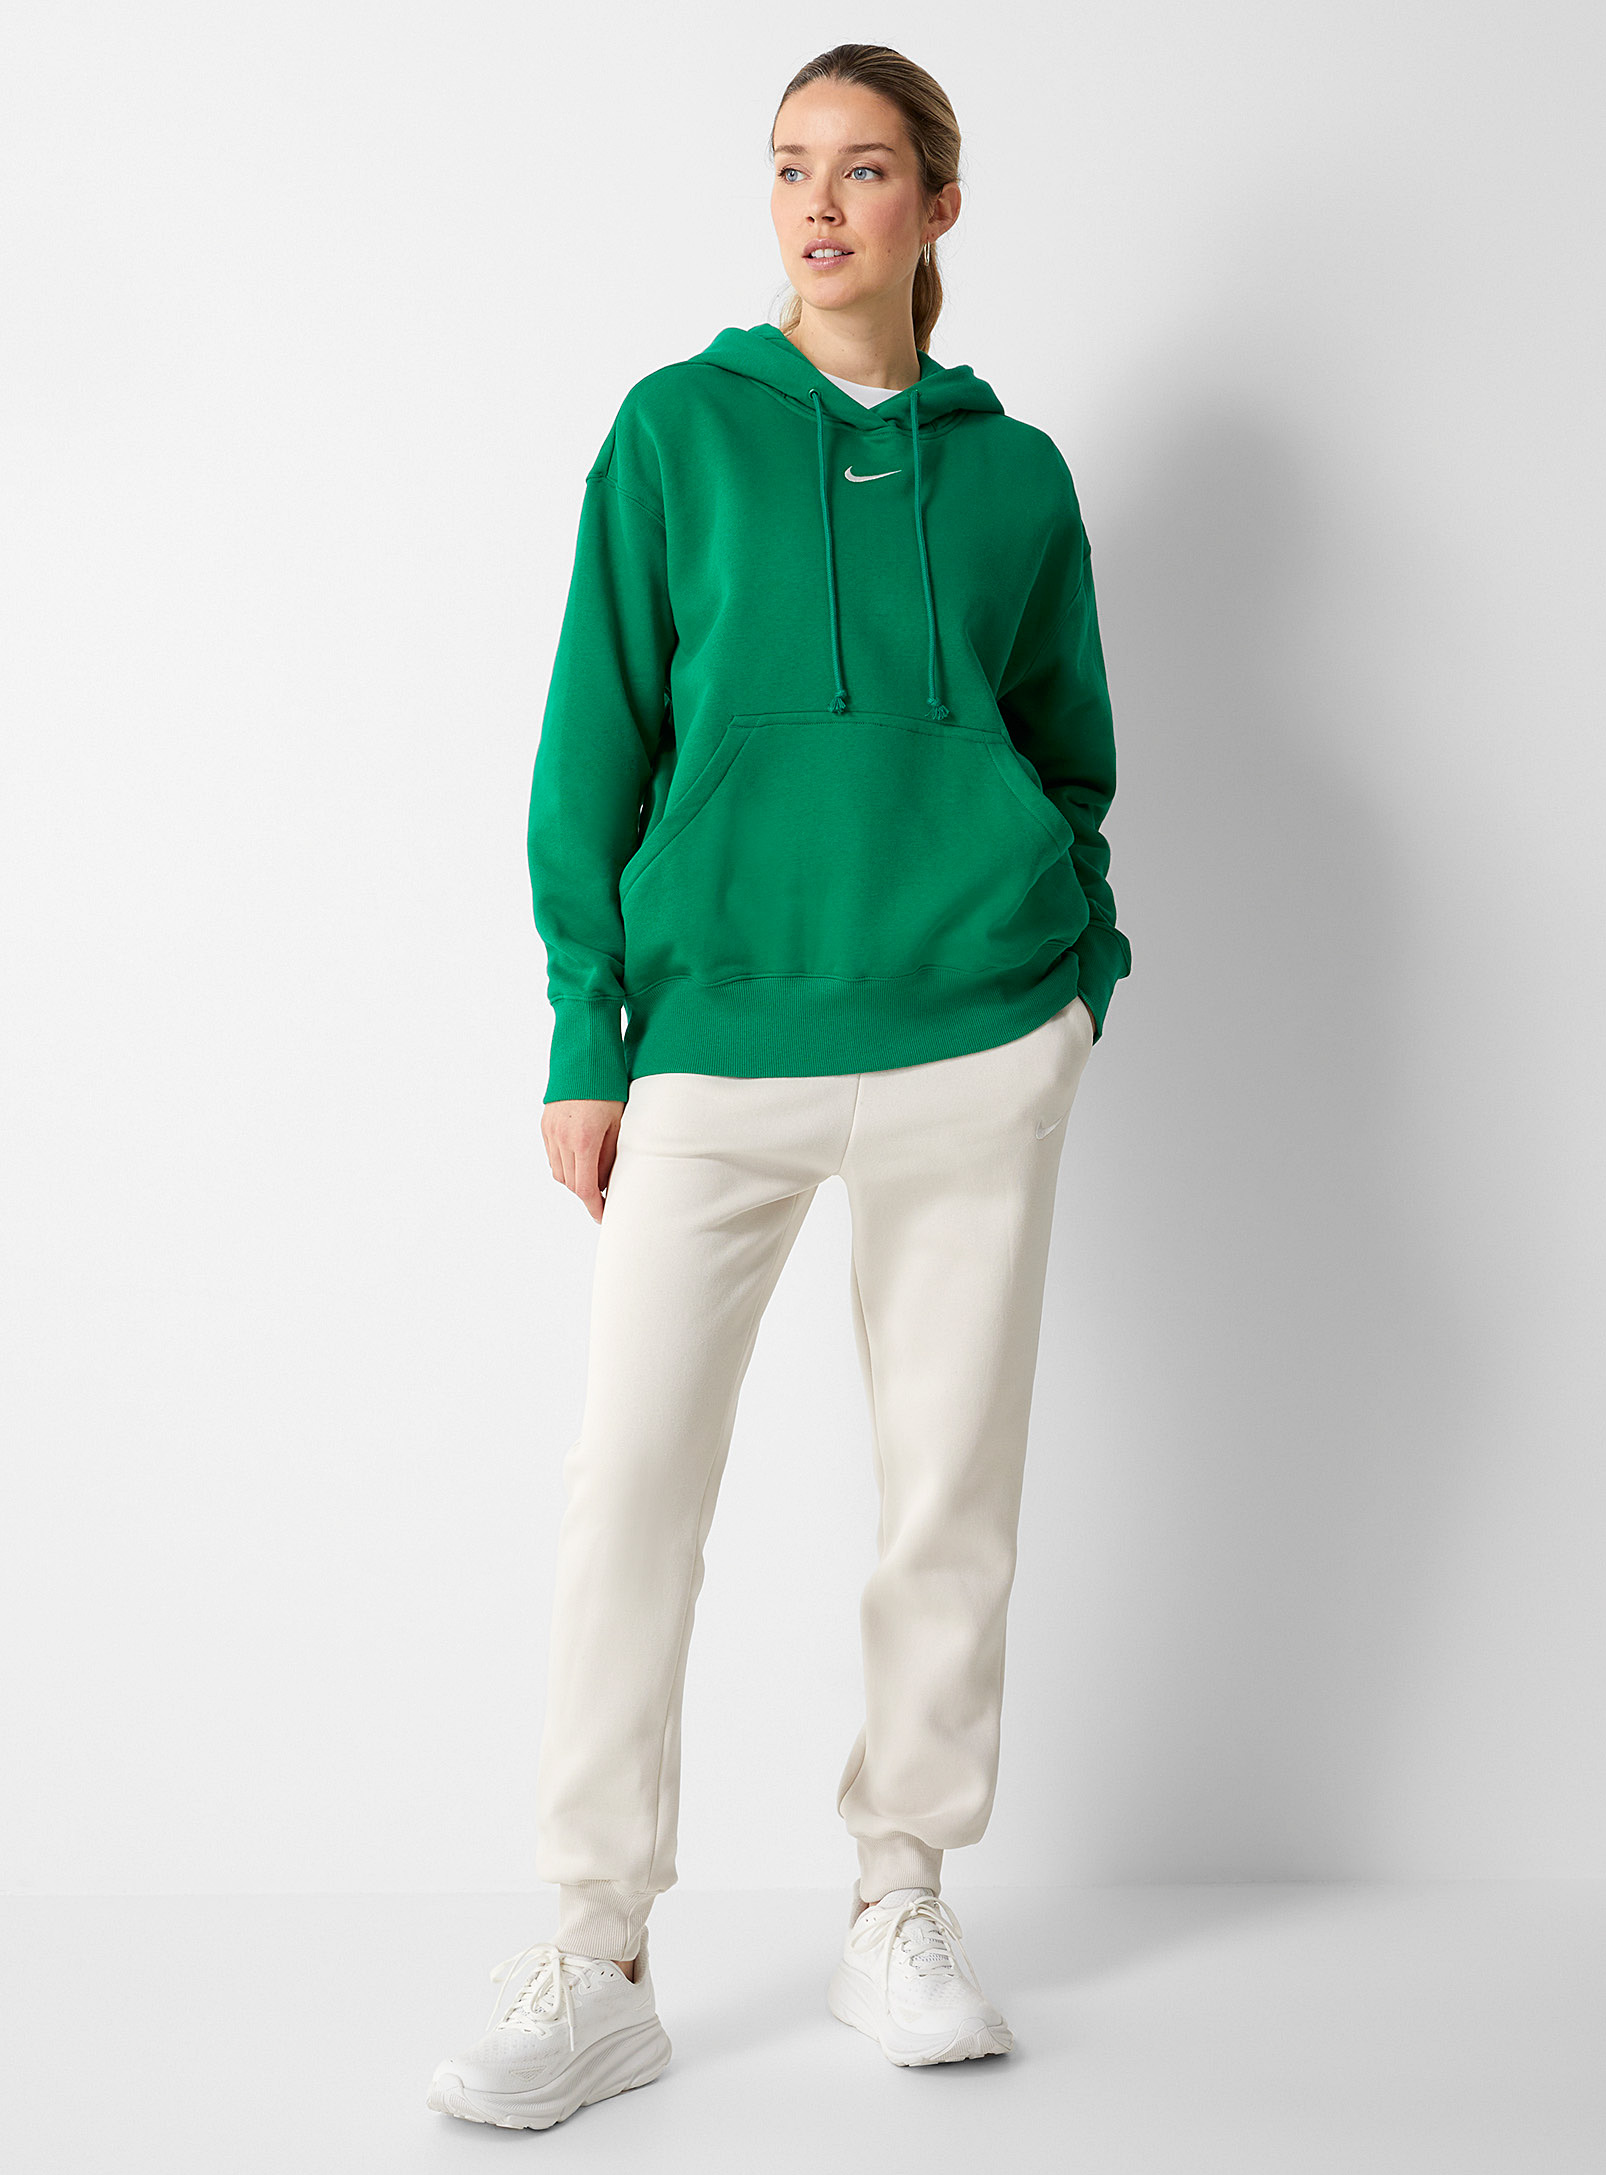 Nike - Women's Phoenix oversized hoodie